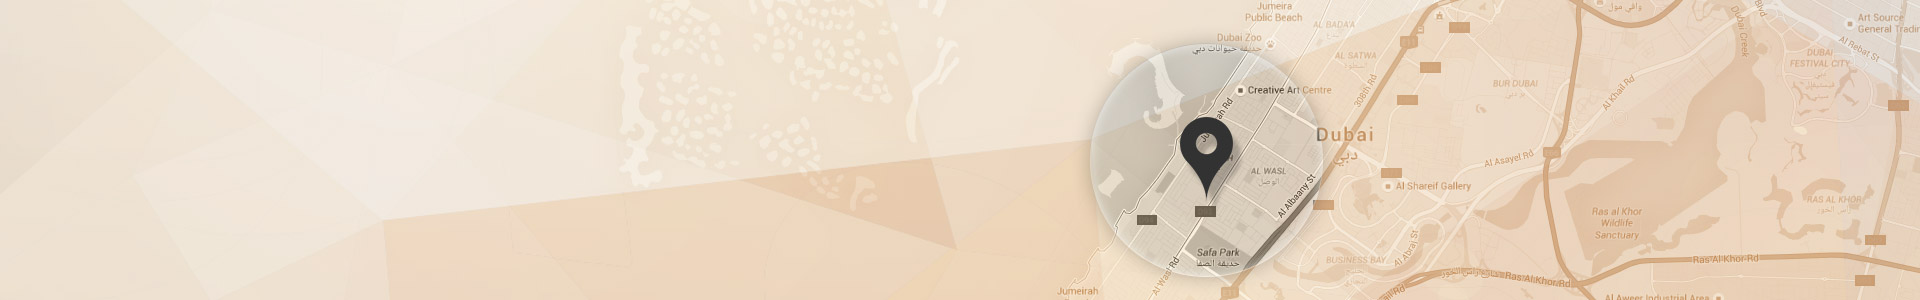 Jumeirah carte